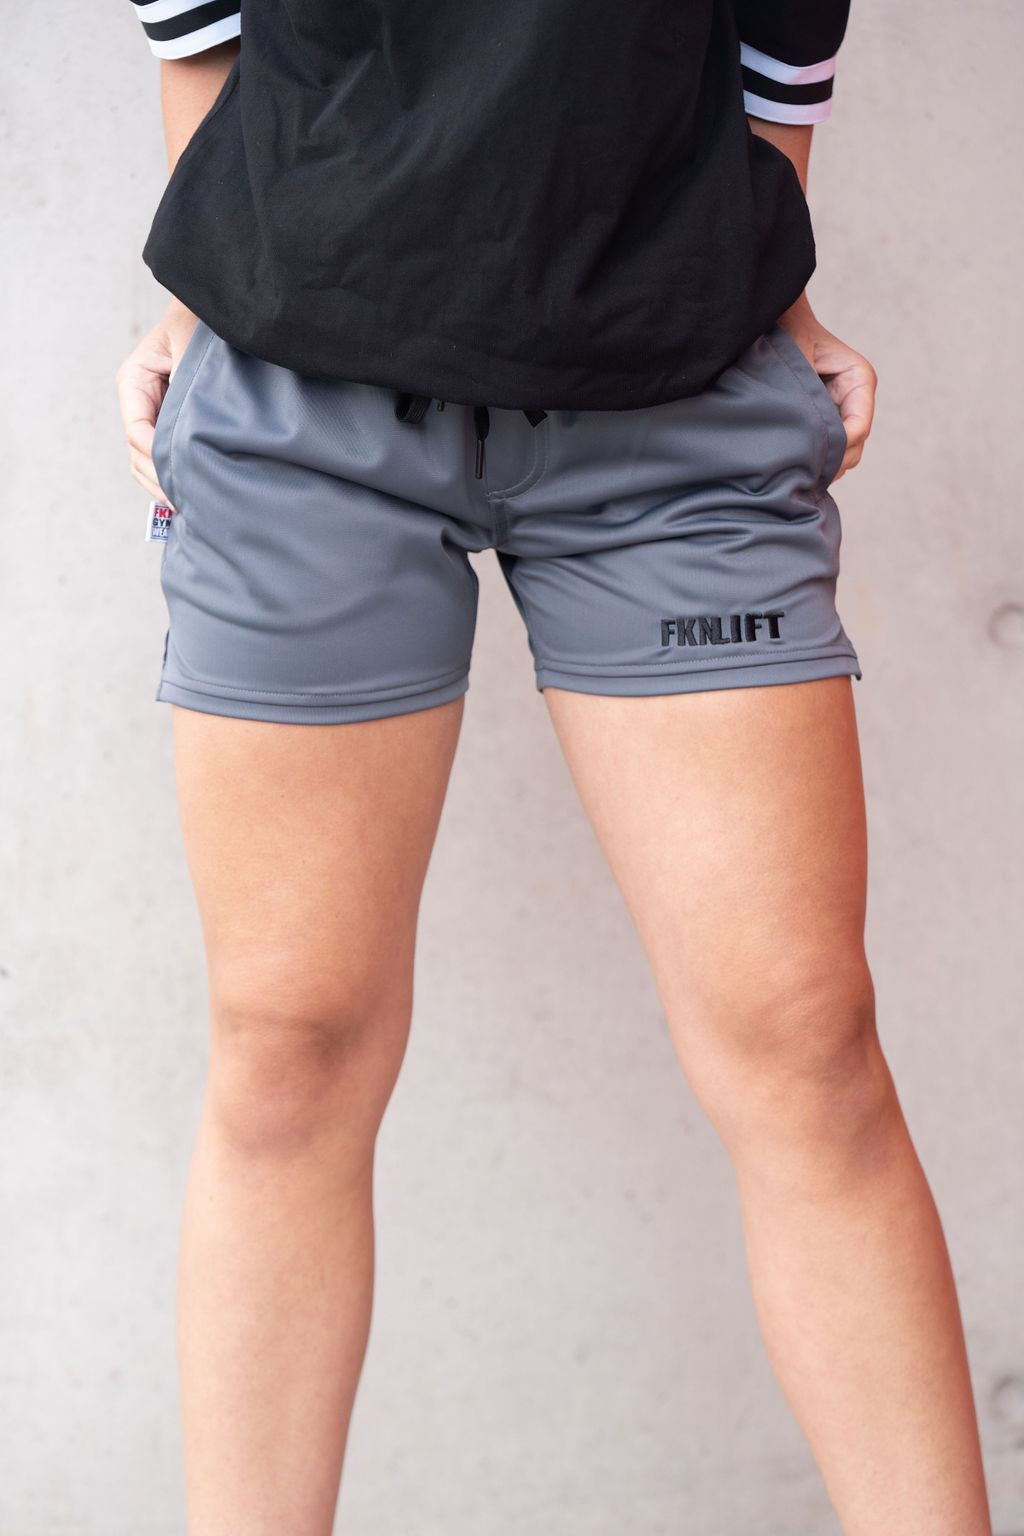 Workout Shorts Women - Women Scrunch Bum Shorts